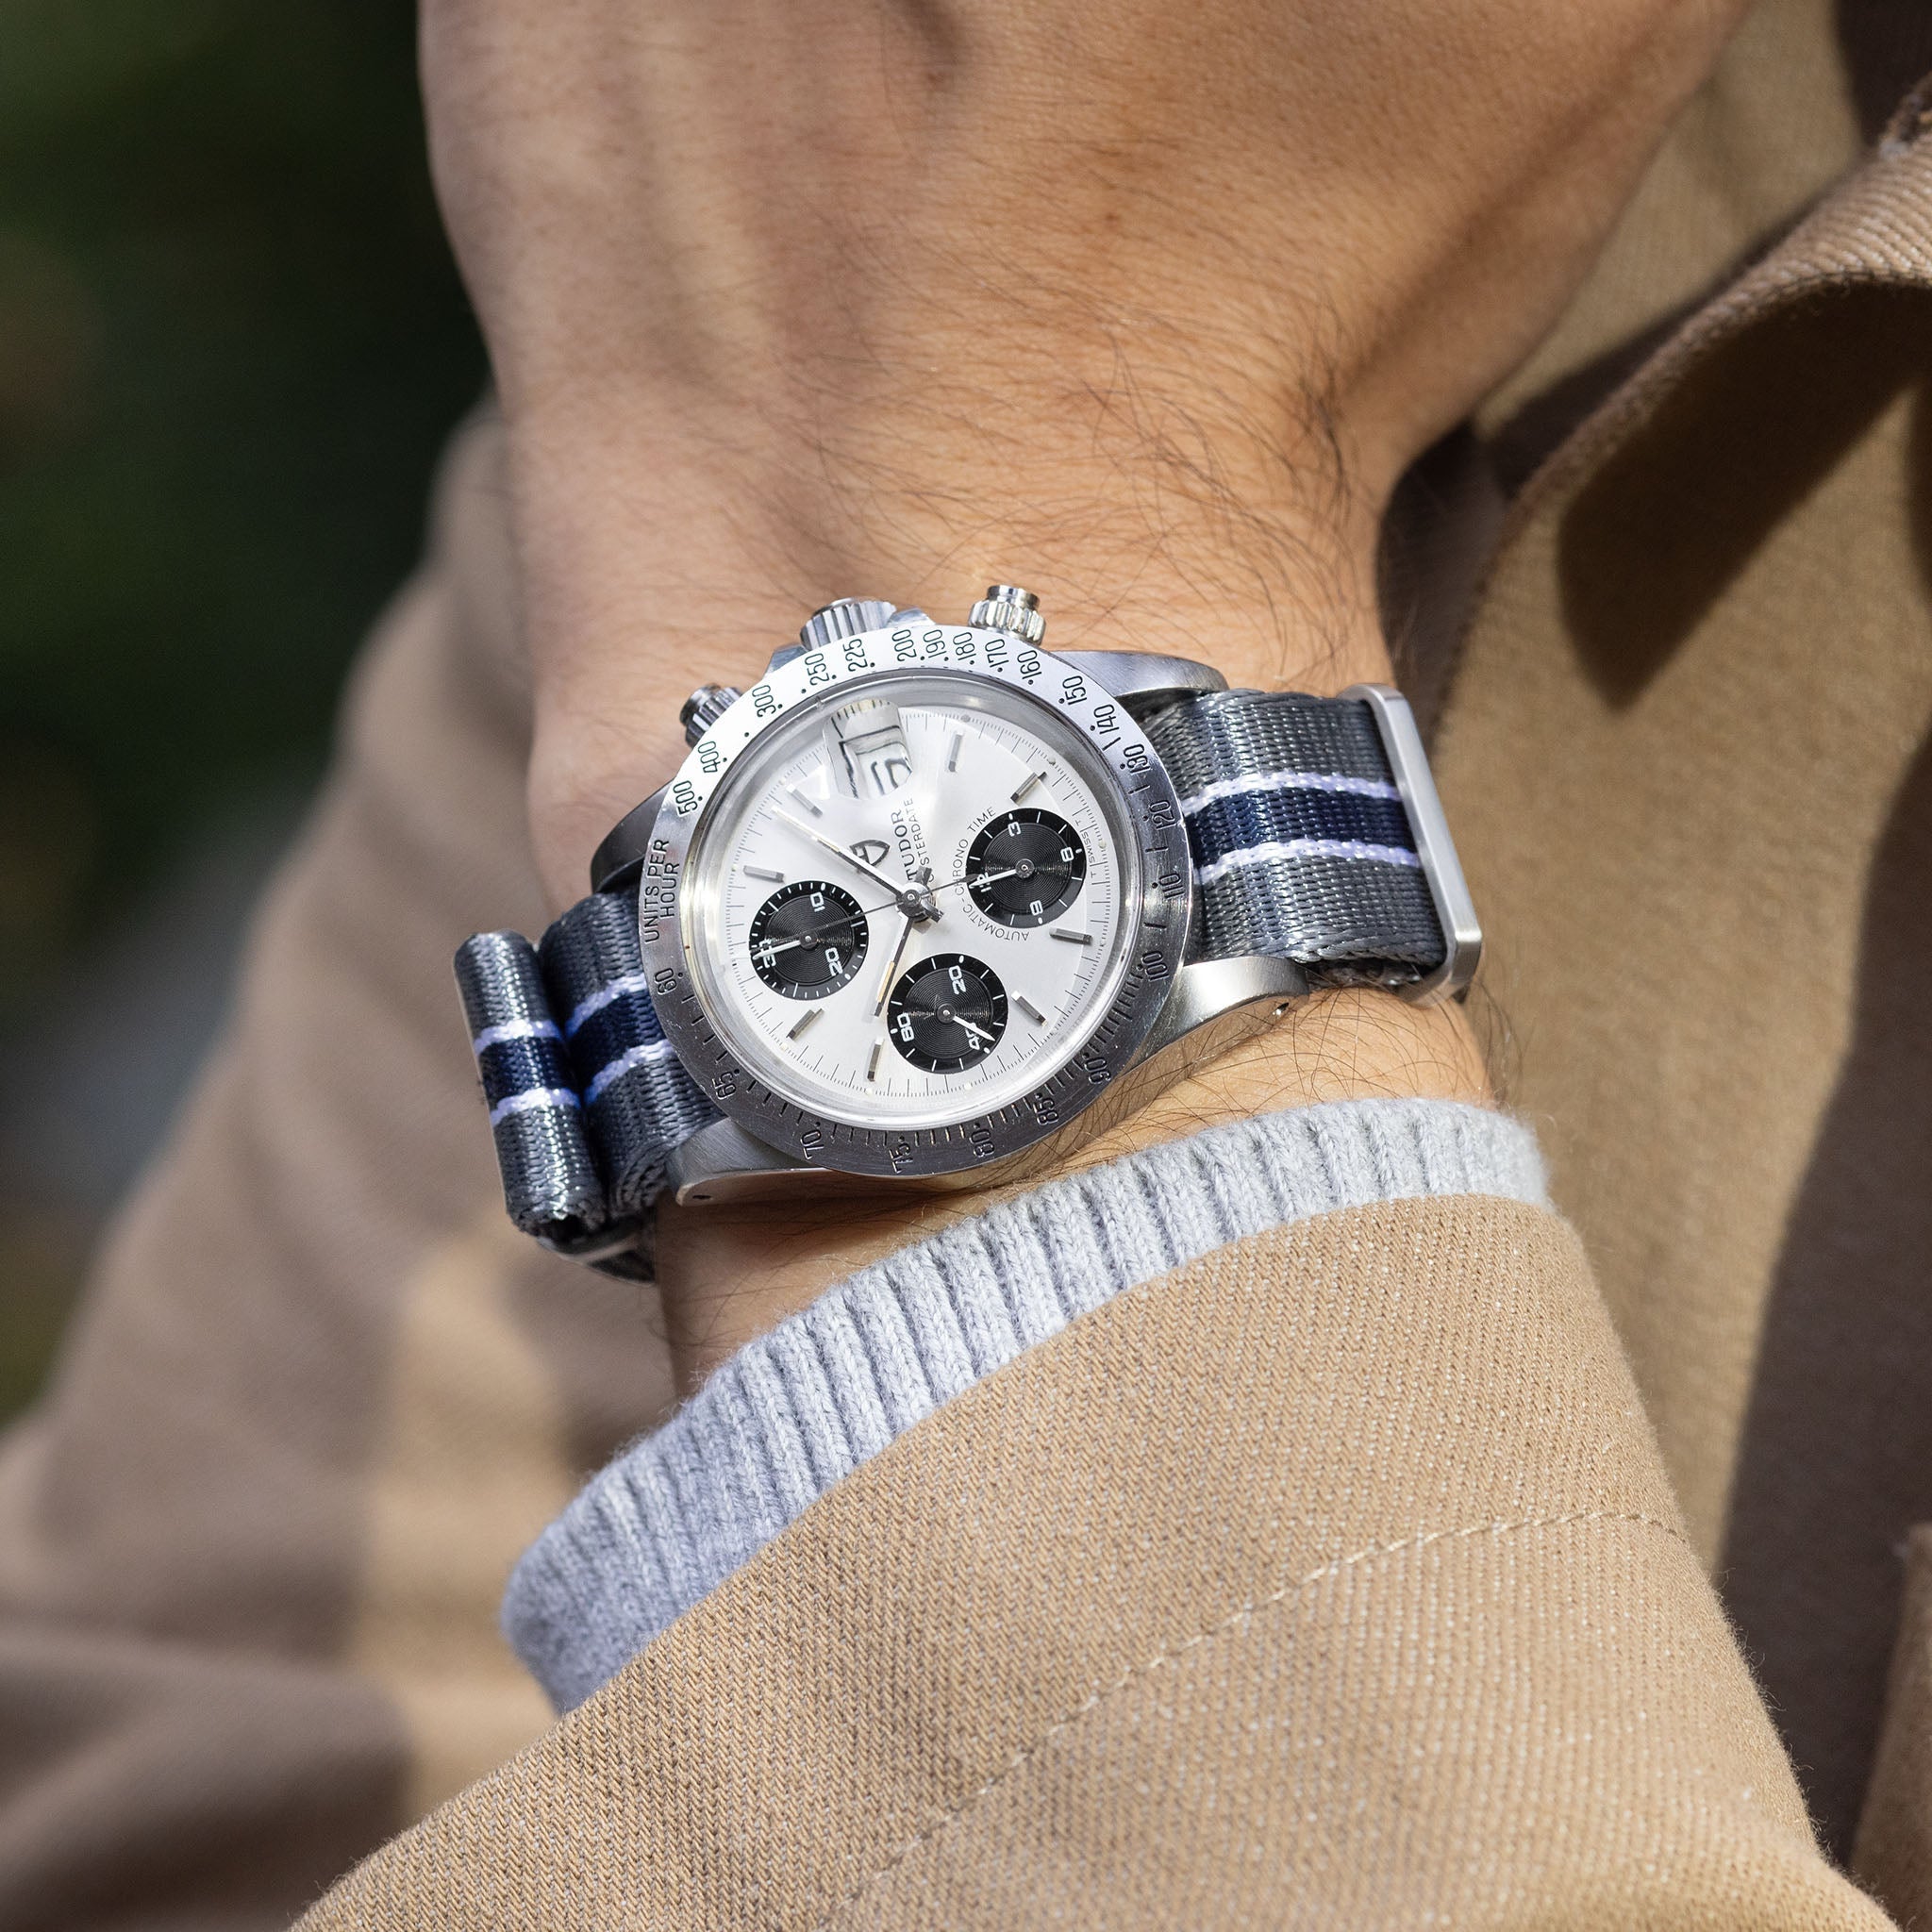 Deluxe Nylon Nato Horlogeband Grijs Blauw Gestreept